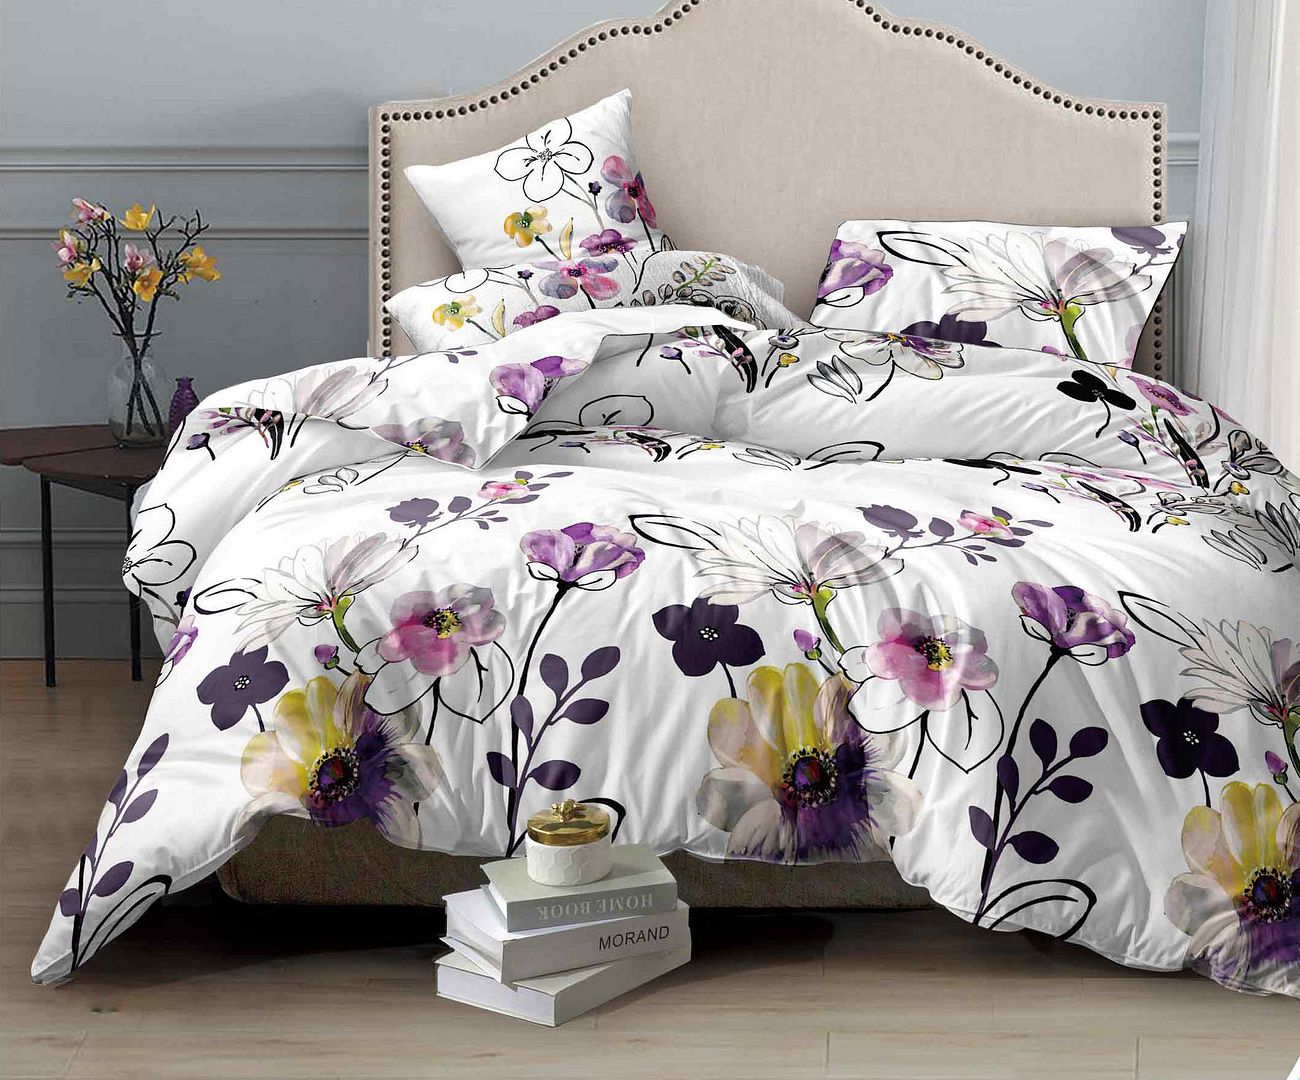 Bloom Quilt/Doona/Duvet Cover & 2 Pillowcases Set (Super King Size) M376 White